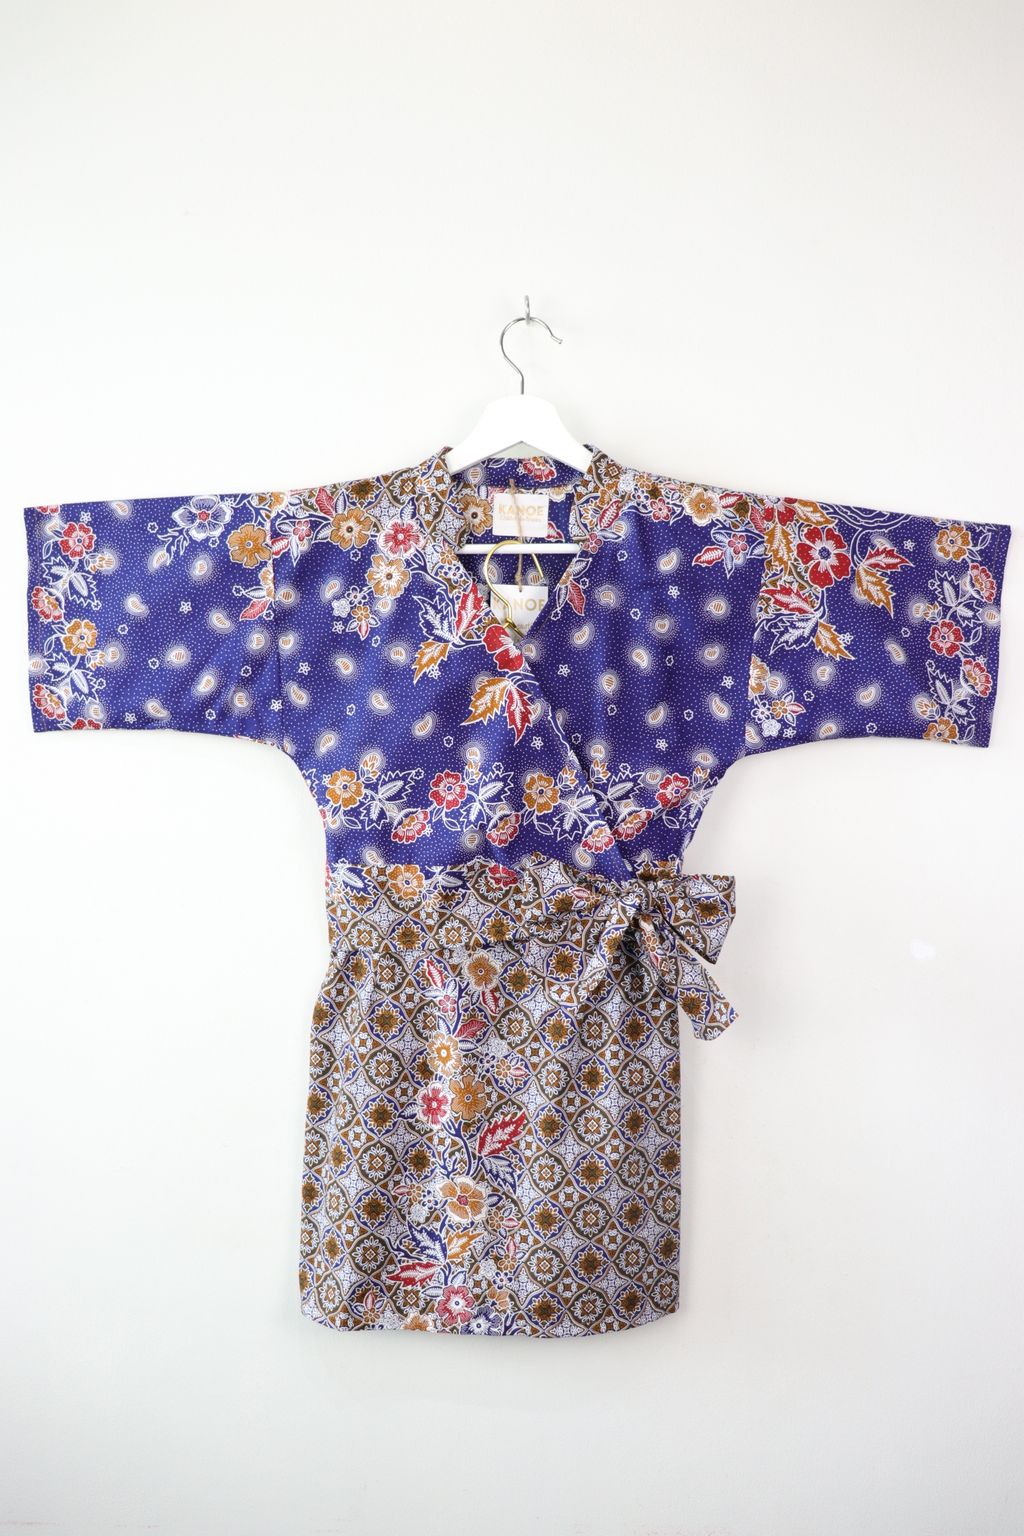 batik-kimono-wrap-matching-set24